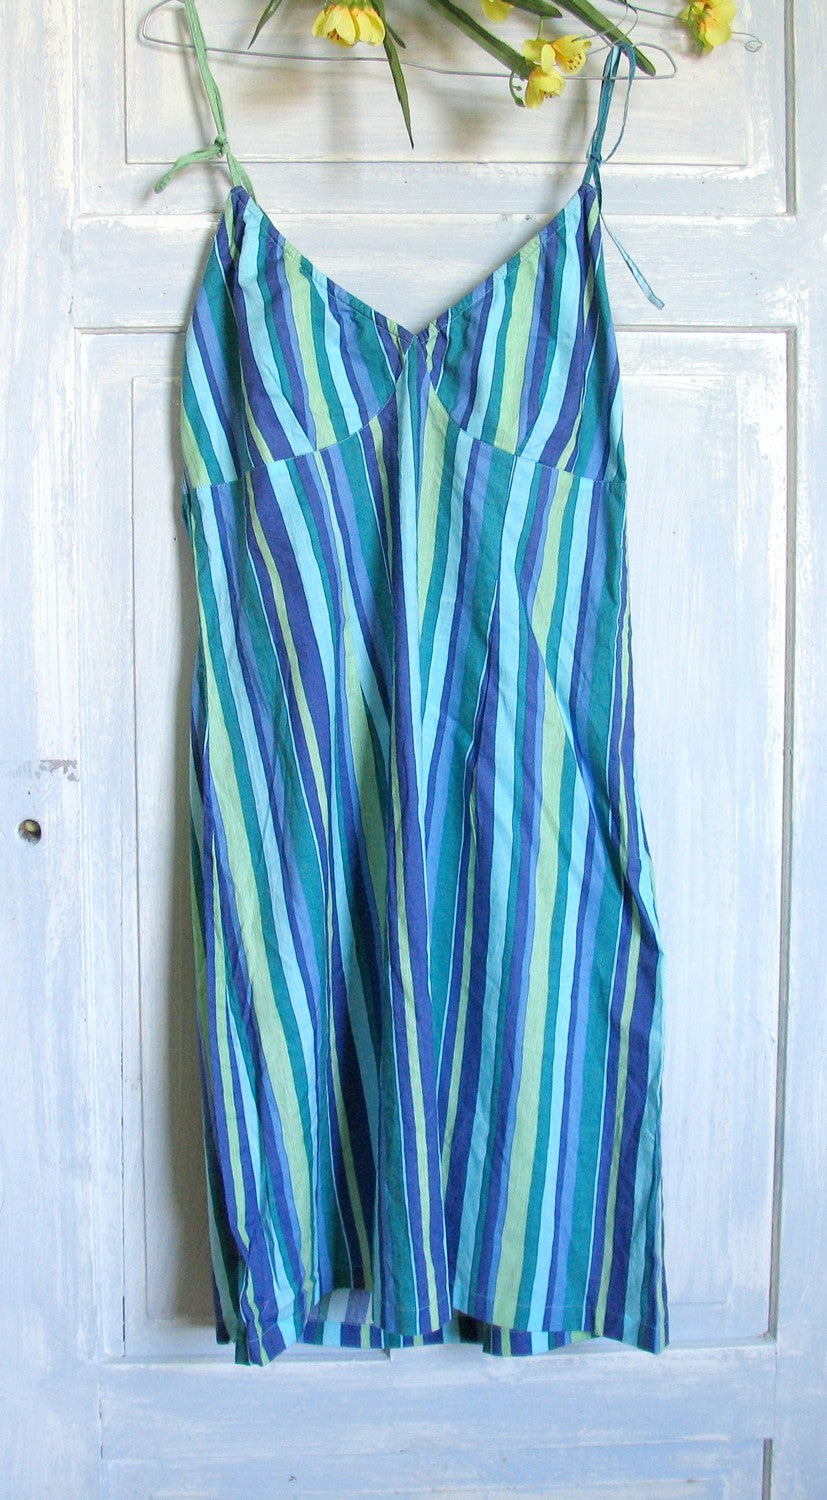 Vintage Striped Dress Grunge Hippie Beach Medium Size 90s